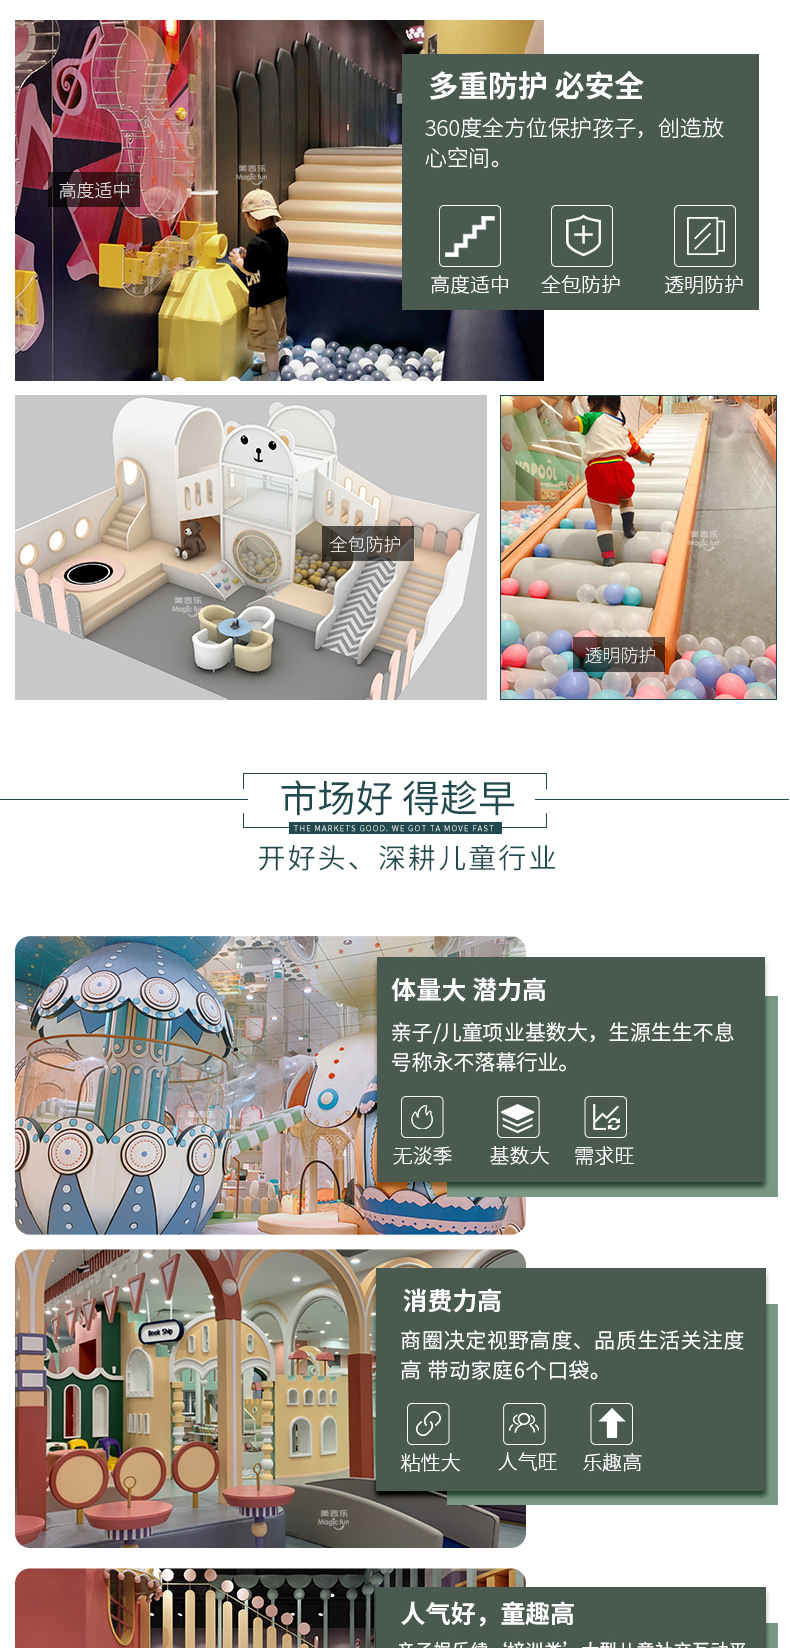 武汉游乐场室内设备 淘气堡儿童乐园 大型亲子餐厅 7